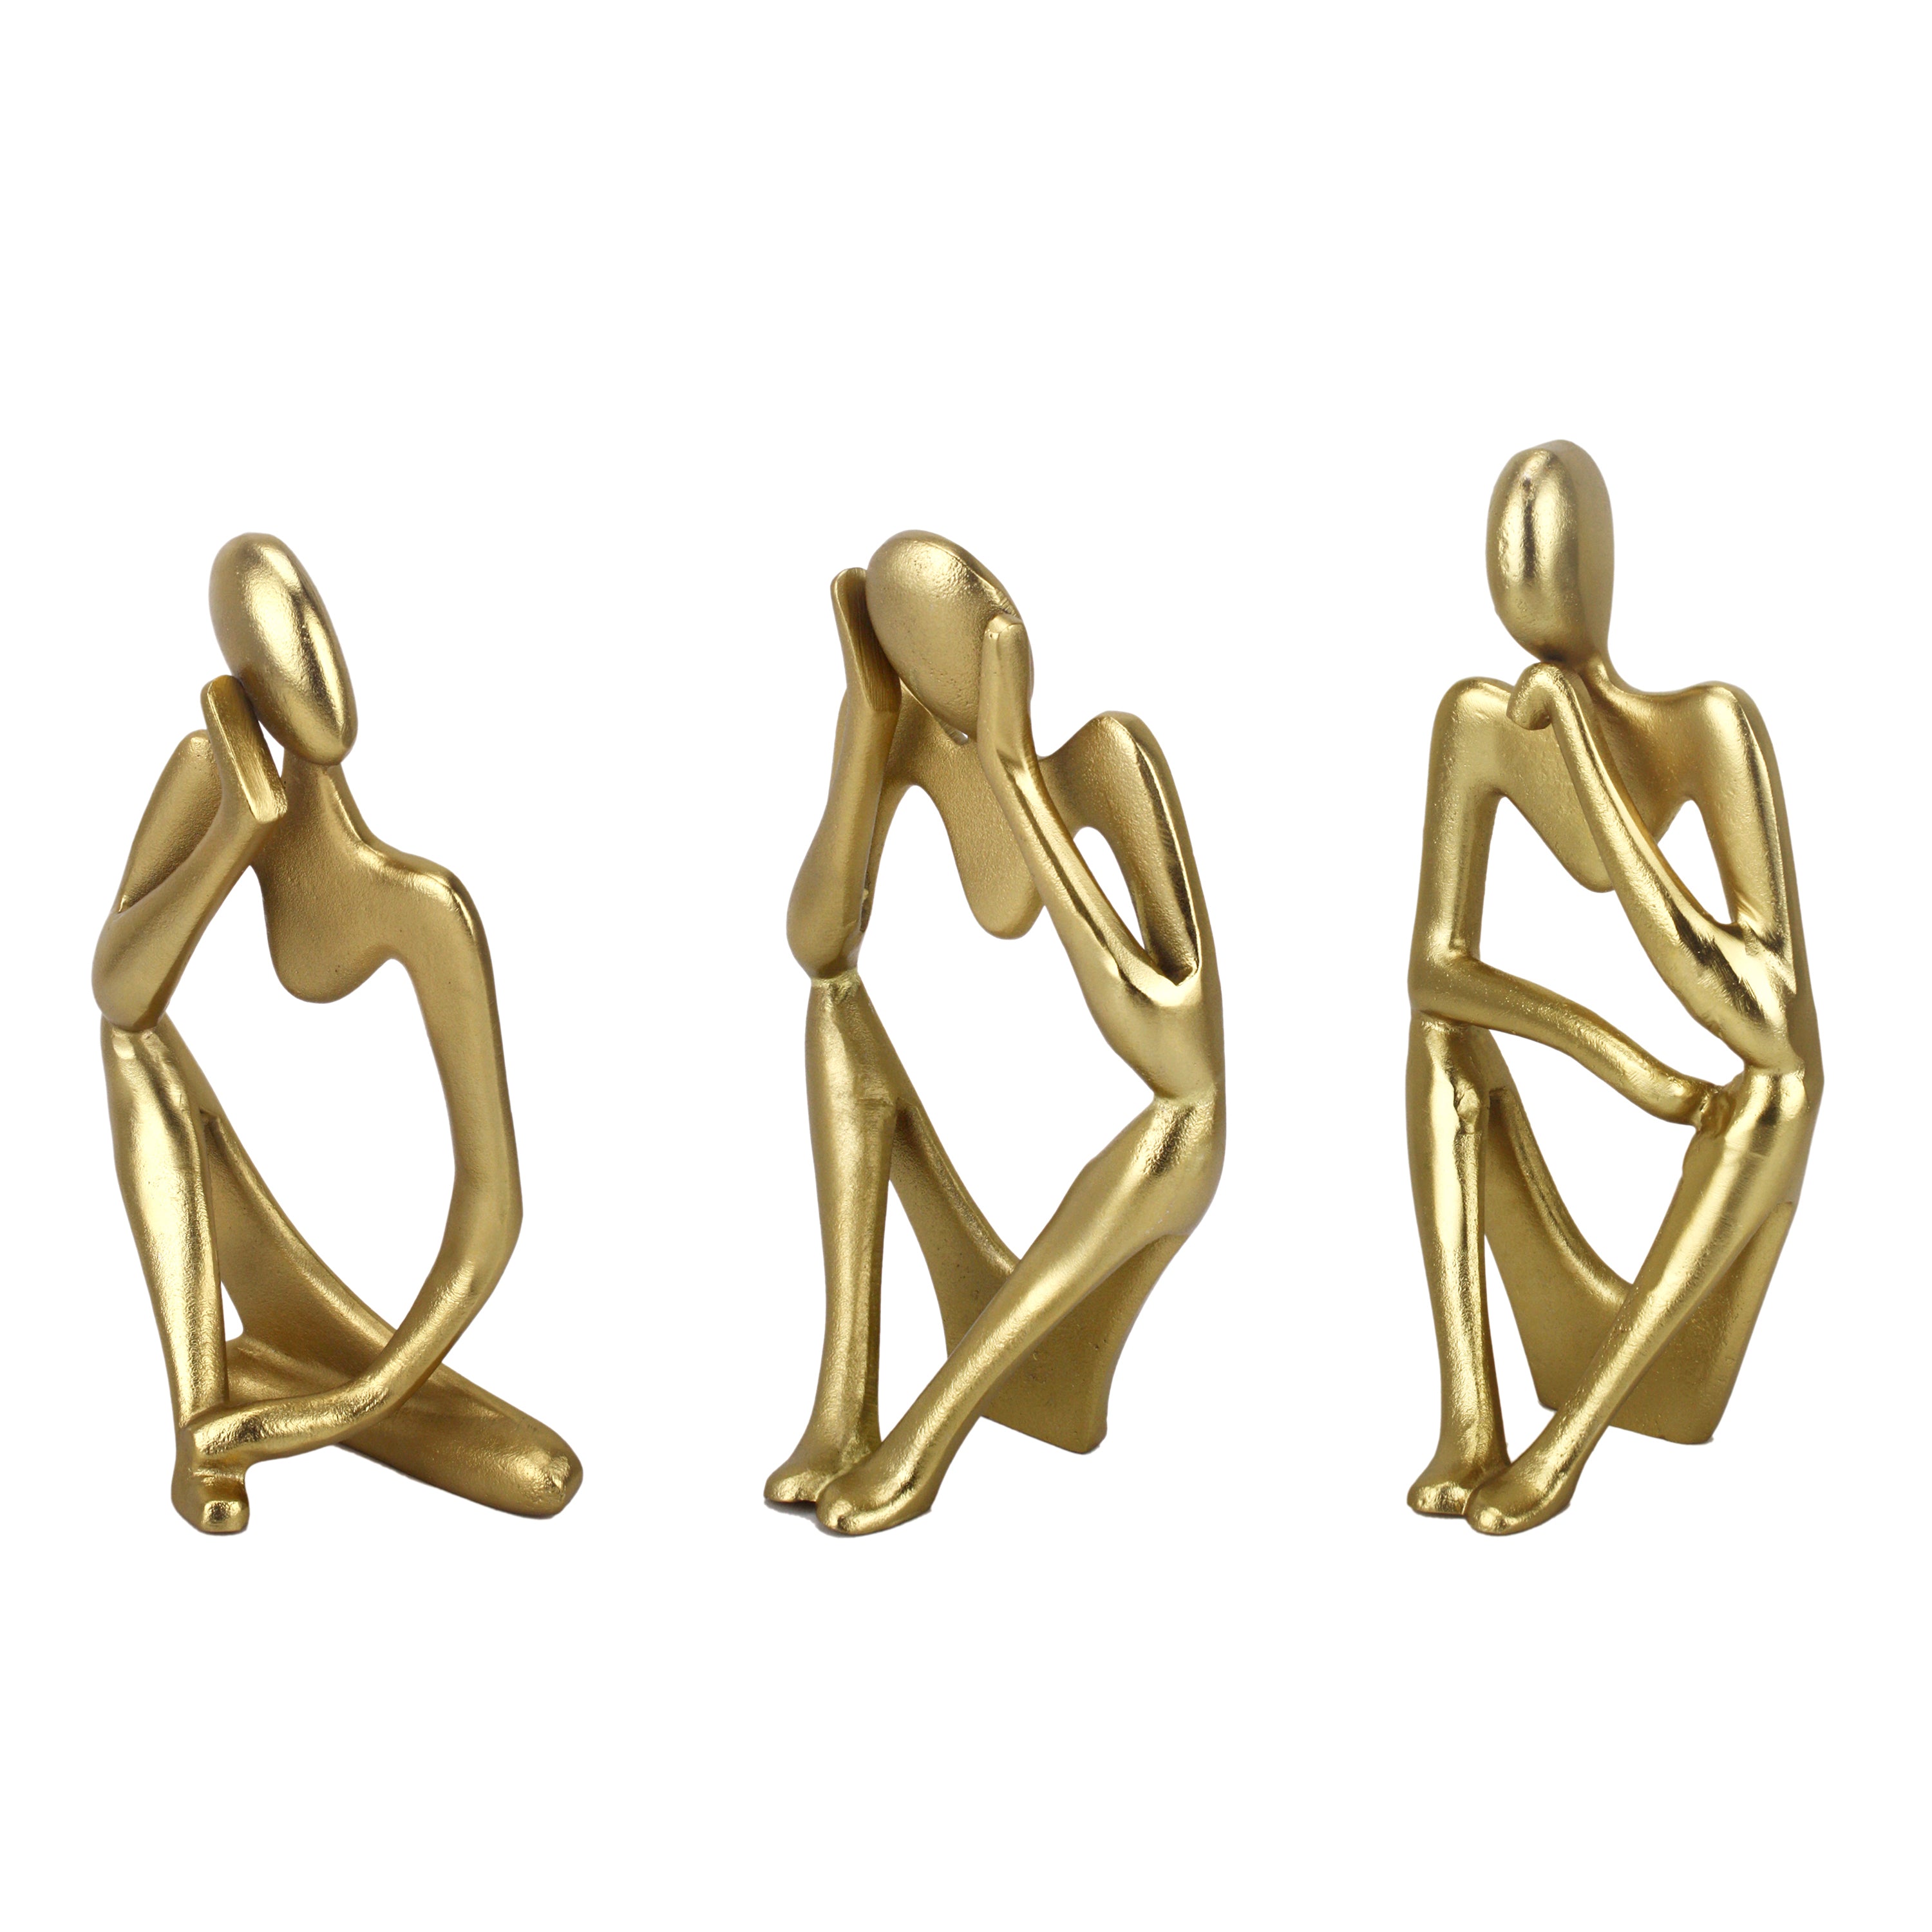 Gold Hollow Man Sculpture Set